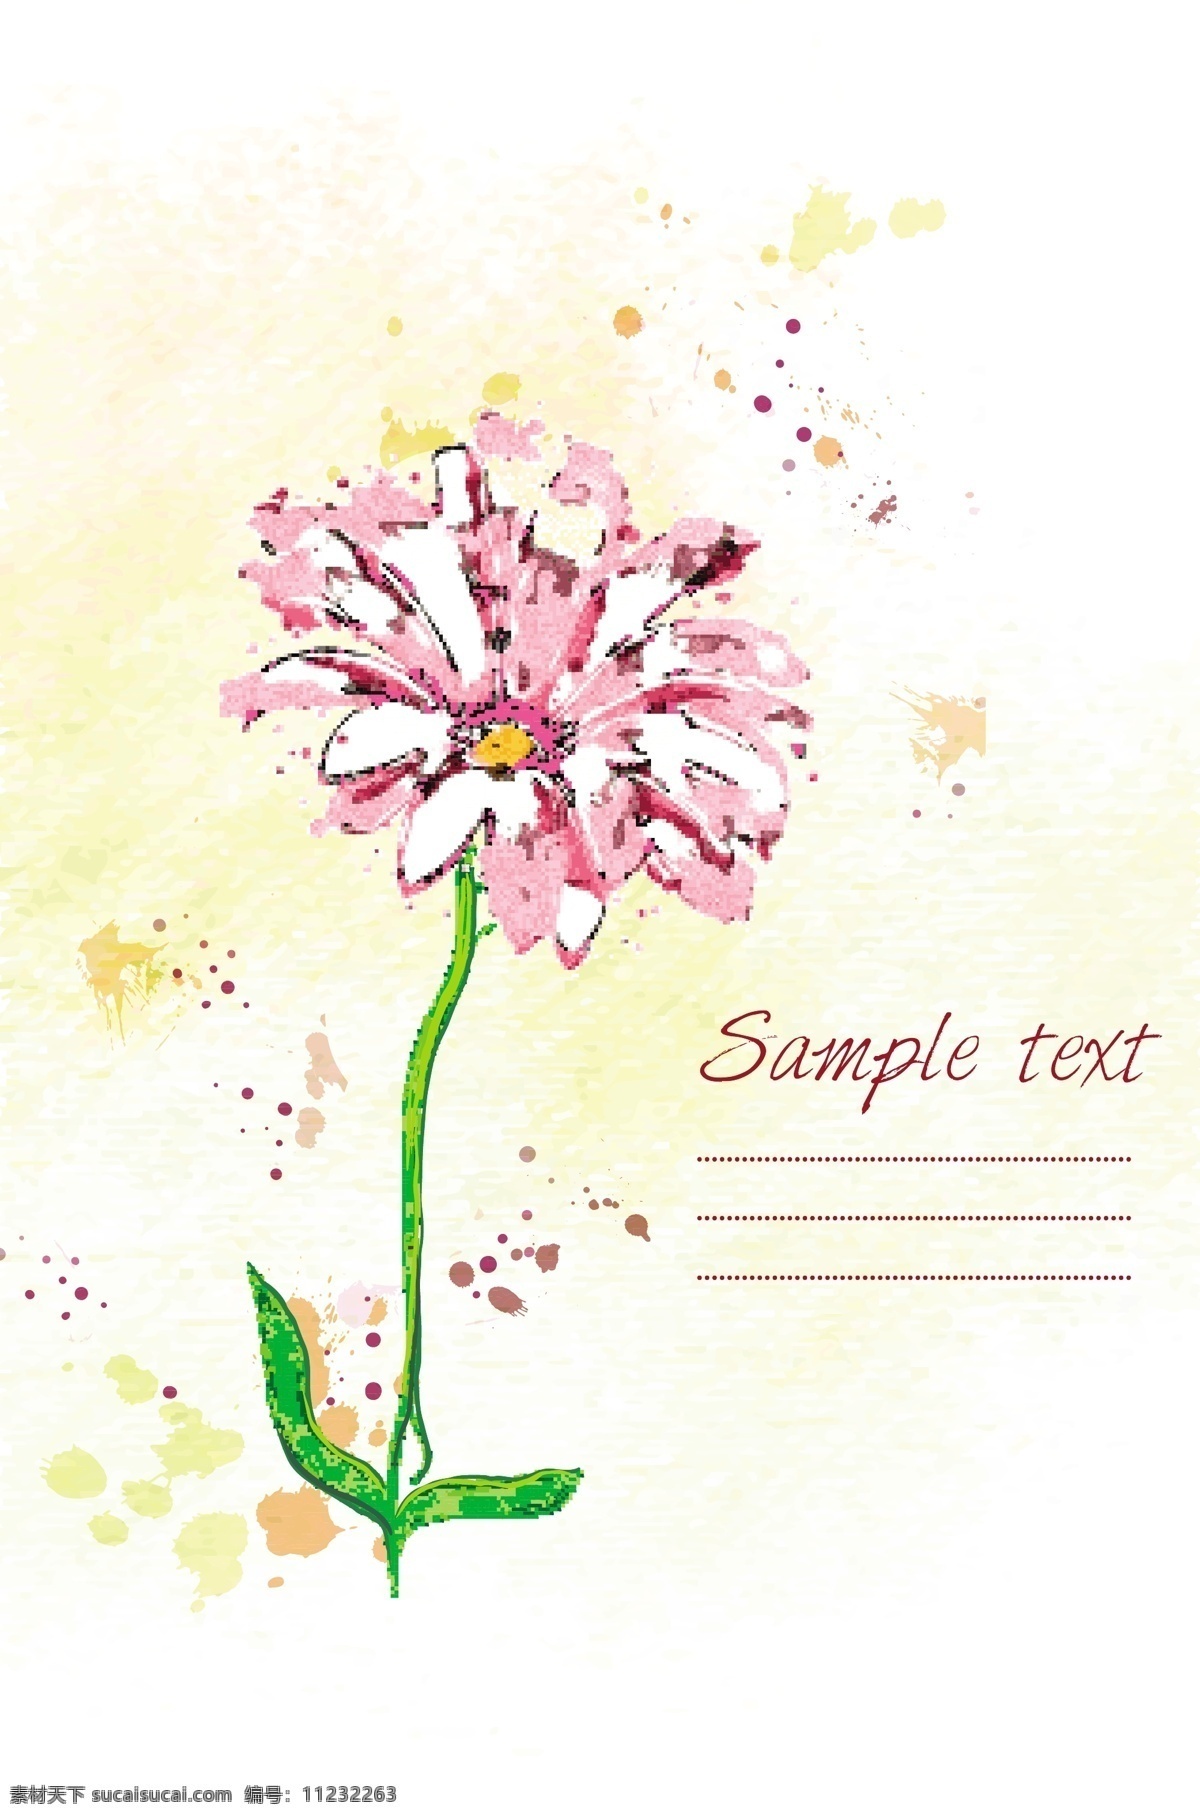 朵 粉色 墨迹 花朵 绿叶 喷墨 手绘图案 植物 花卉 花纹花边 底纹边框 矢量素材 白色